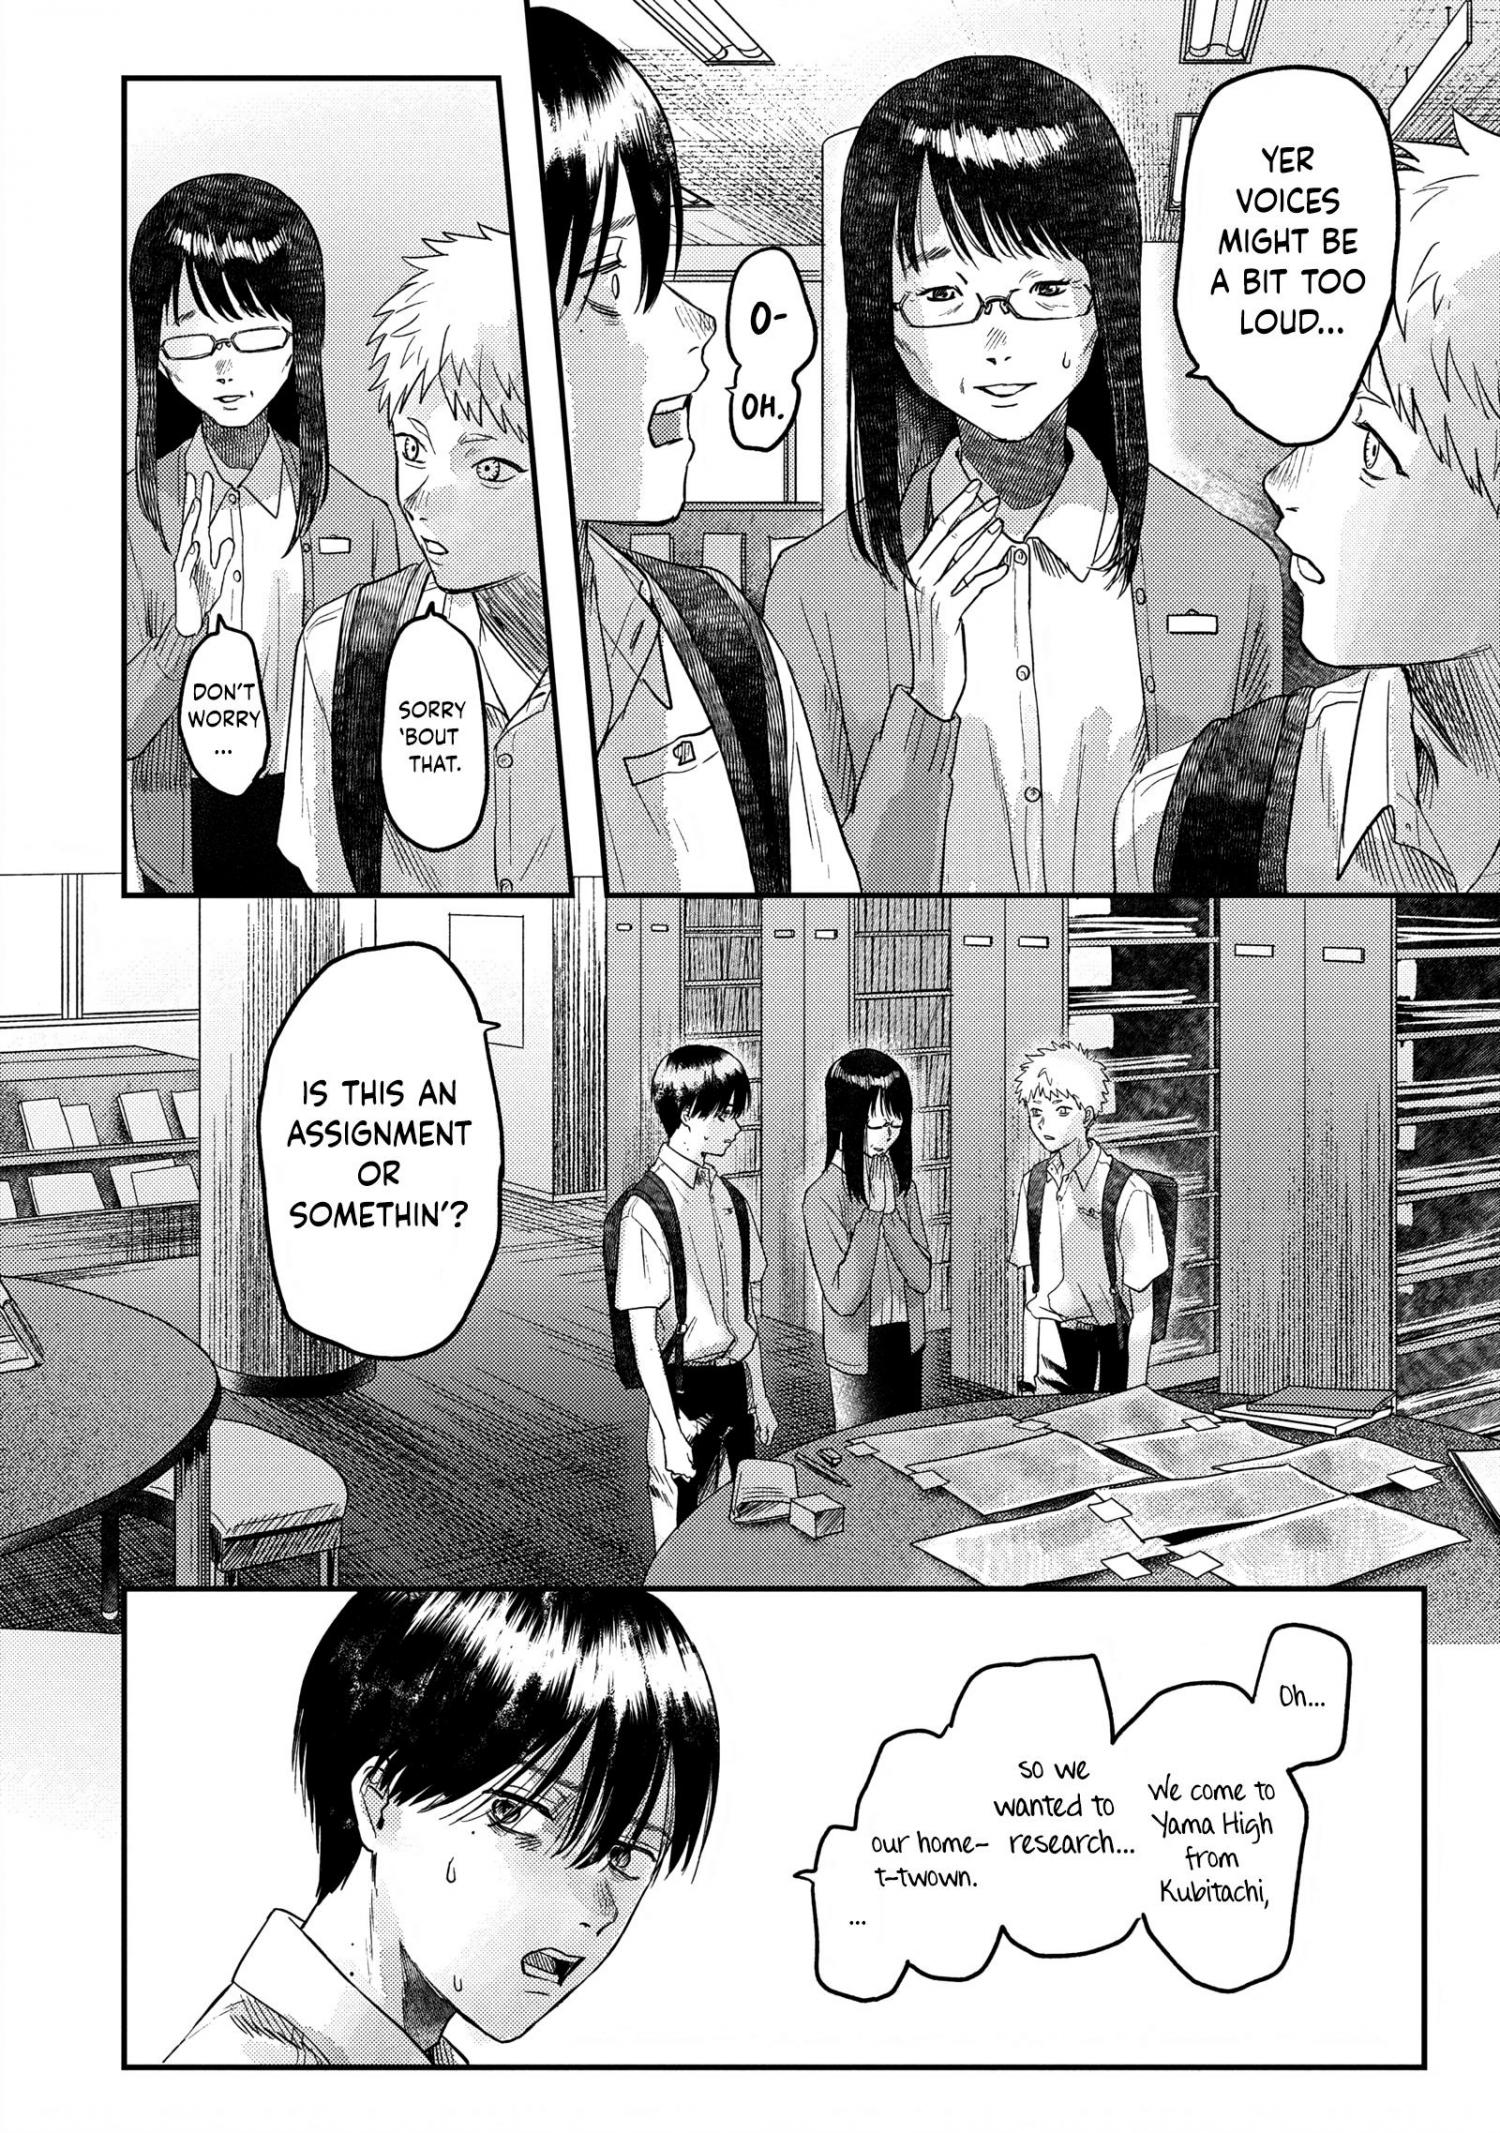 Yuusha ga Shinda! - Kami no Kuni-hen Ch.4 Page 17 - Mangago